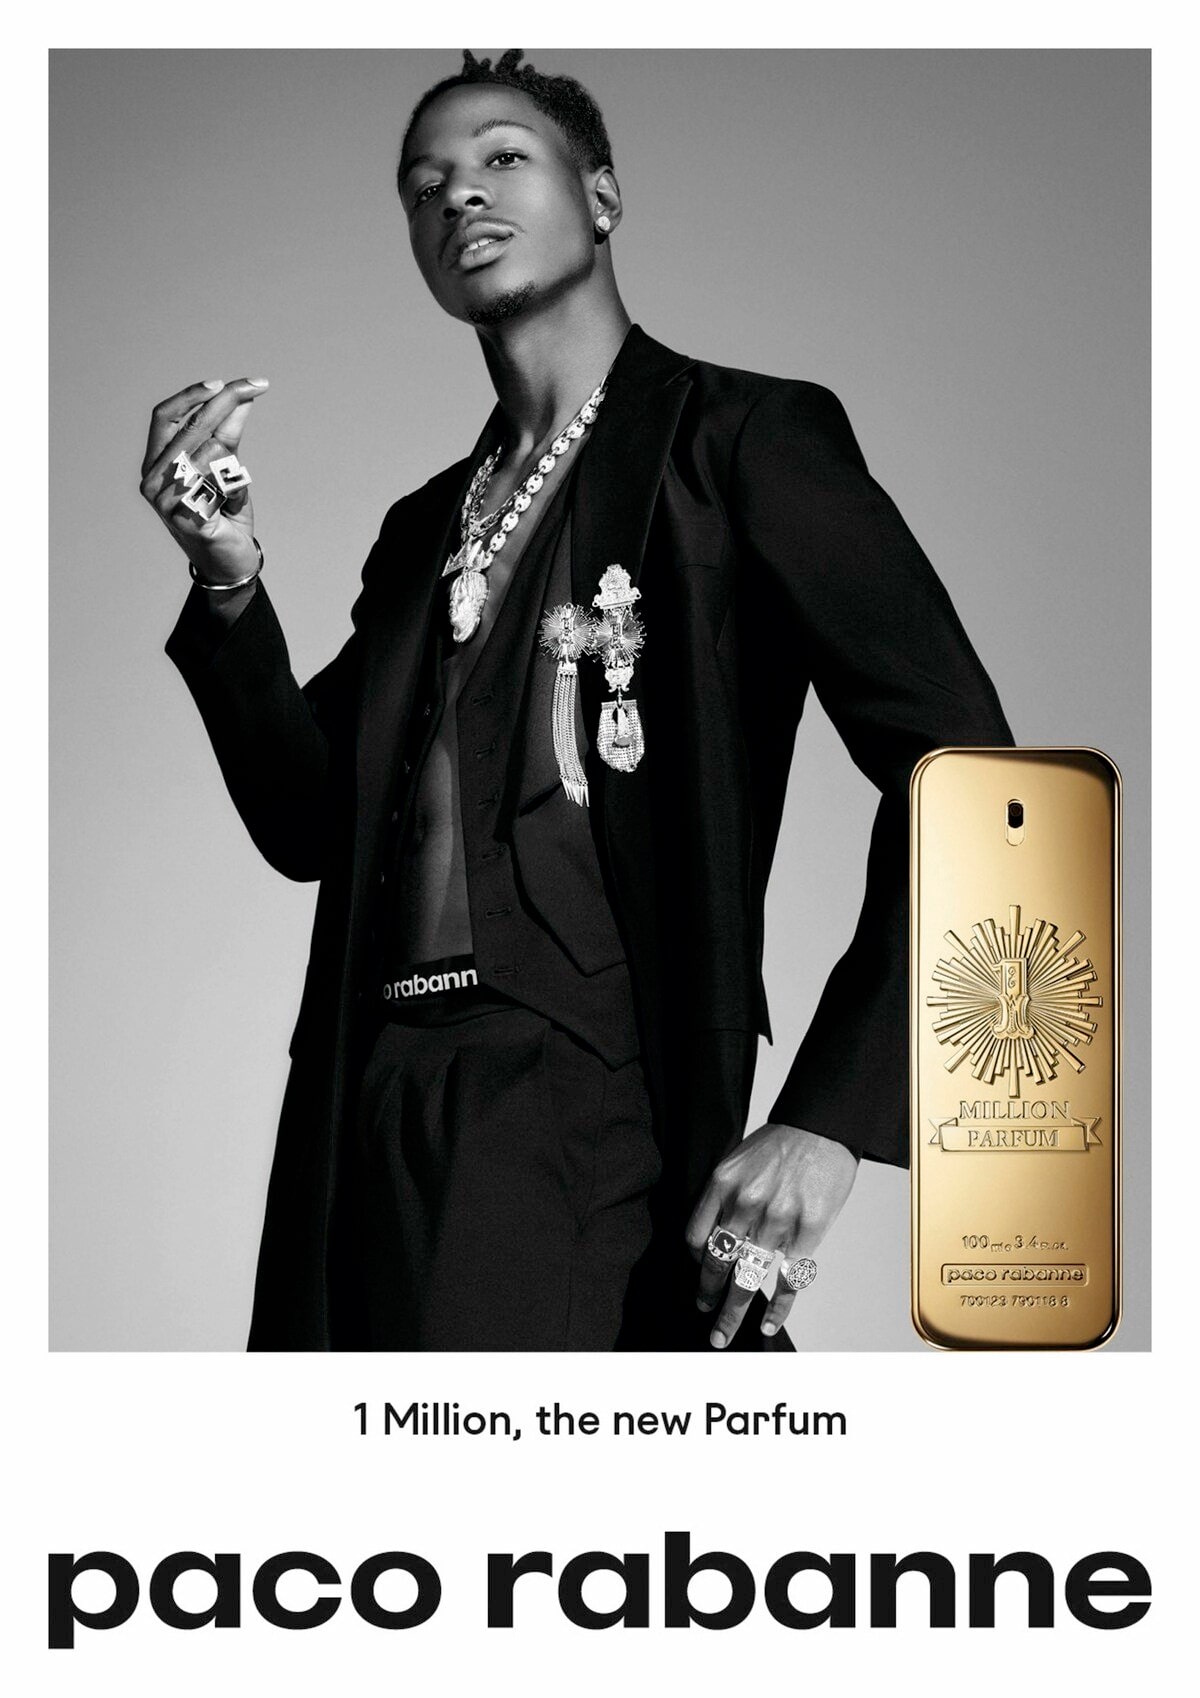 بررسی، مشاهده قیمت و خرید عطر ادکلن پاکو رابان وان (1) میلیون پارفوم (پرفیوم) paco rabanne 1 Million Parfum اصل